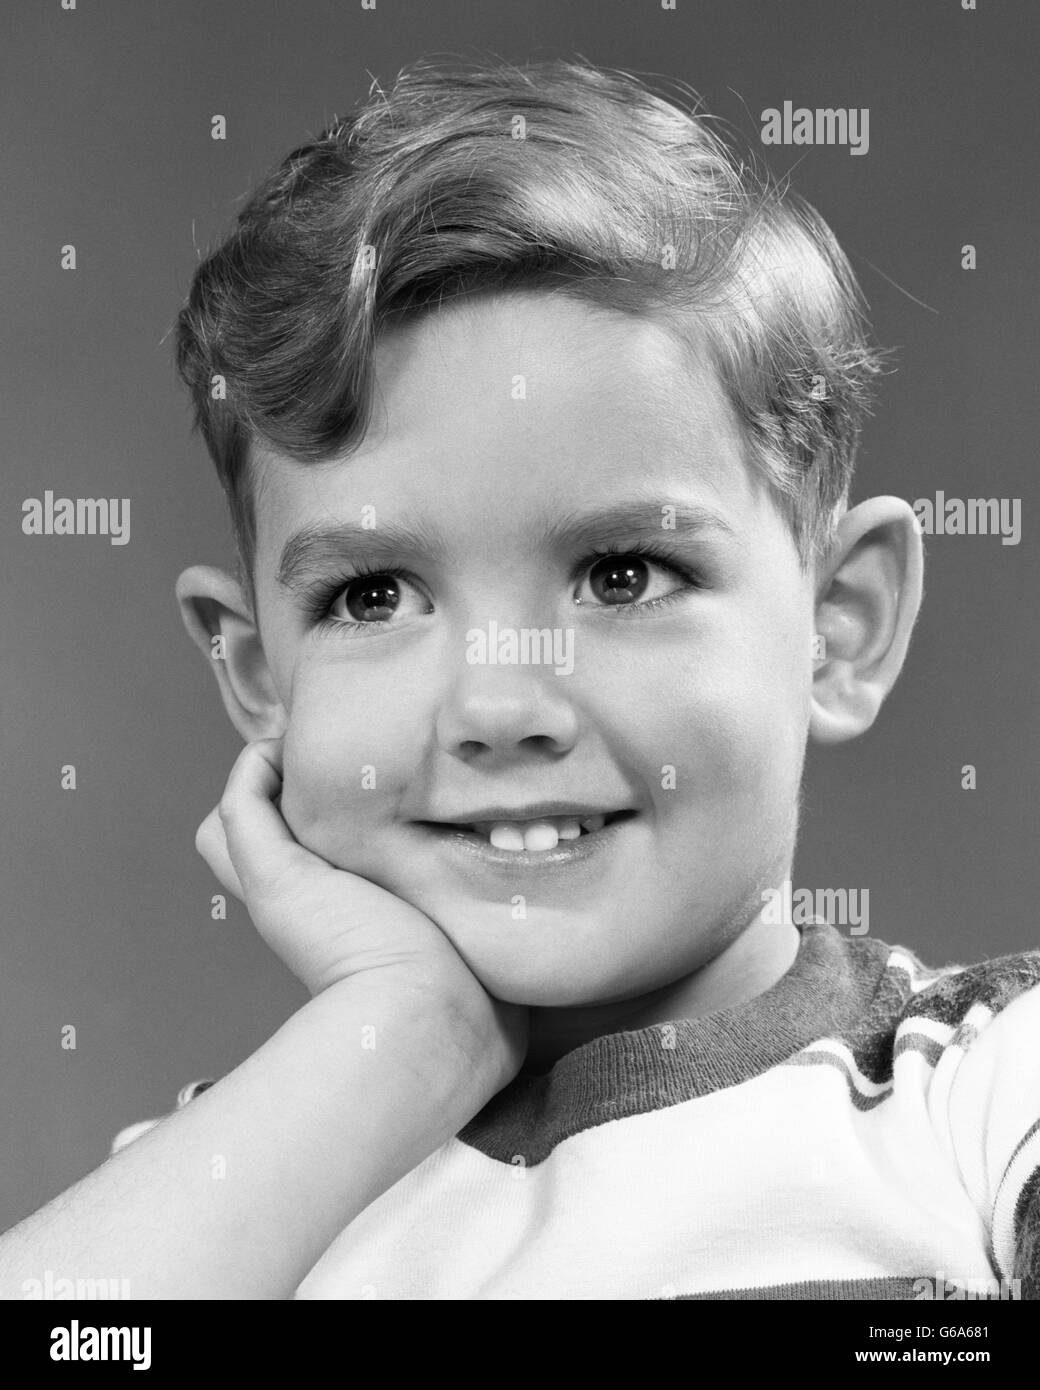 1950 PORTRAIT SMILING BOY LOOKING AT CAMERA VISAGE REPOSANT DANS LA MAIN Banque D'Images